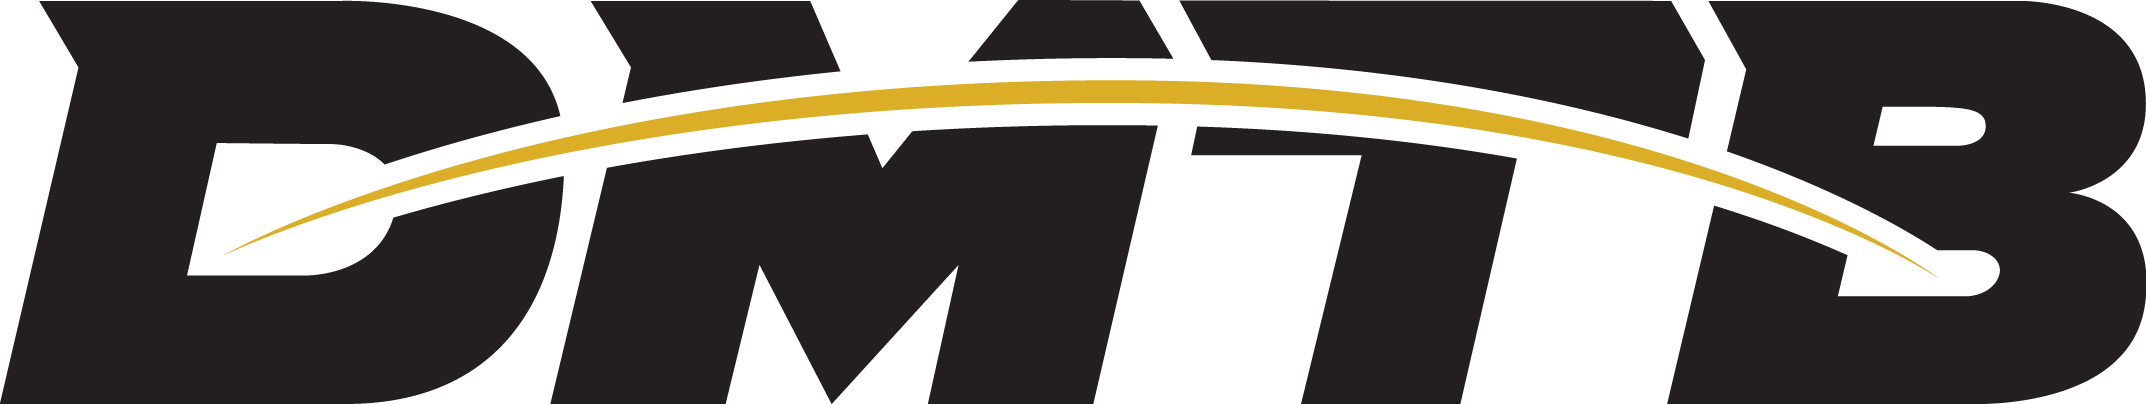 Des Moines Truck Brokers, Inc. Company Logo